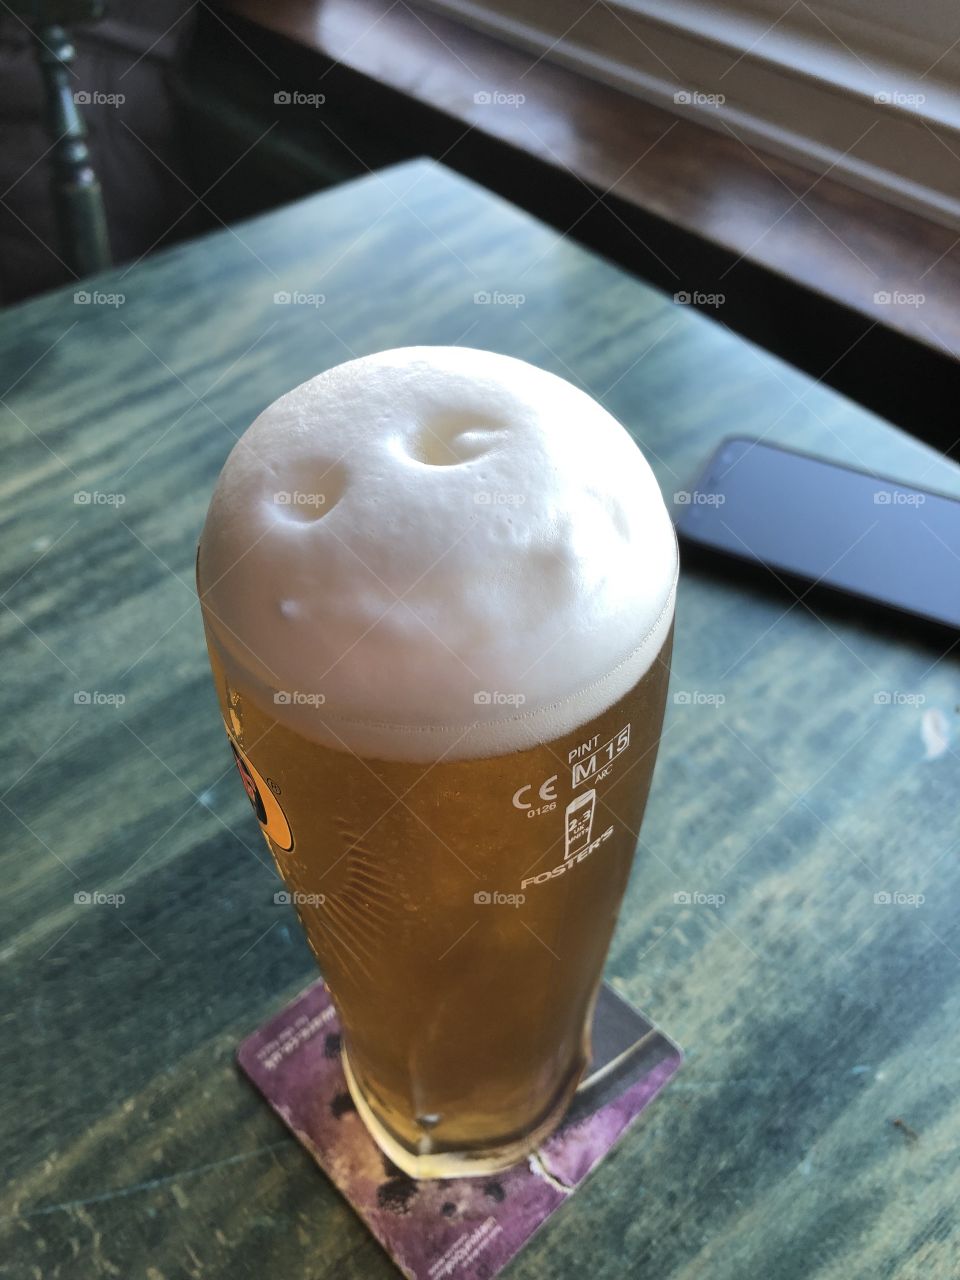 Happy beer! 😁